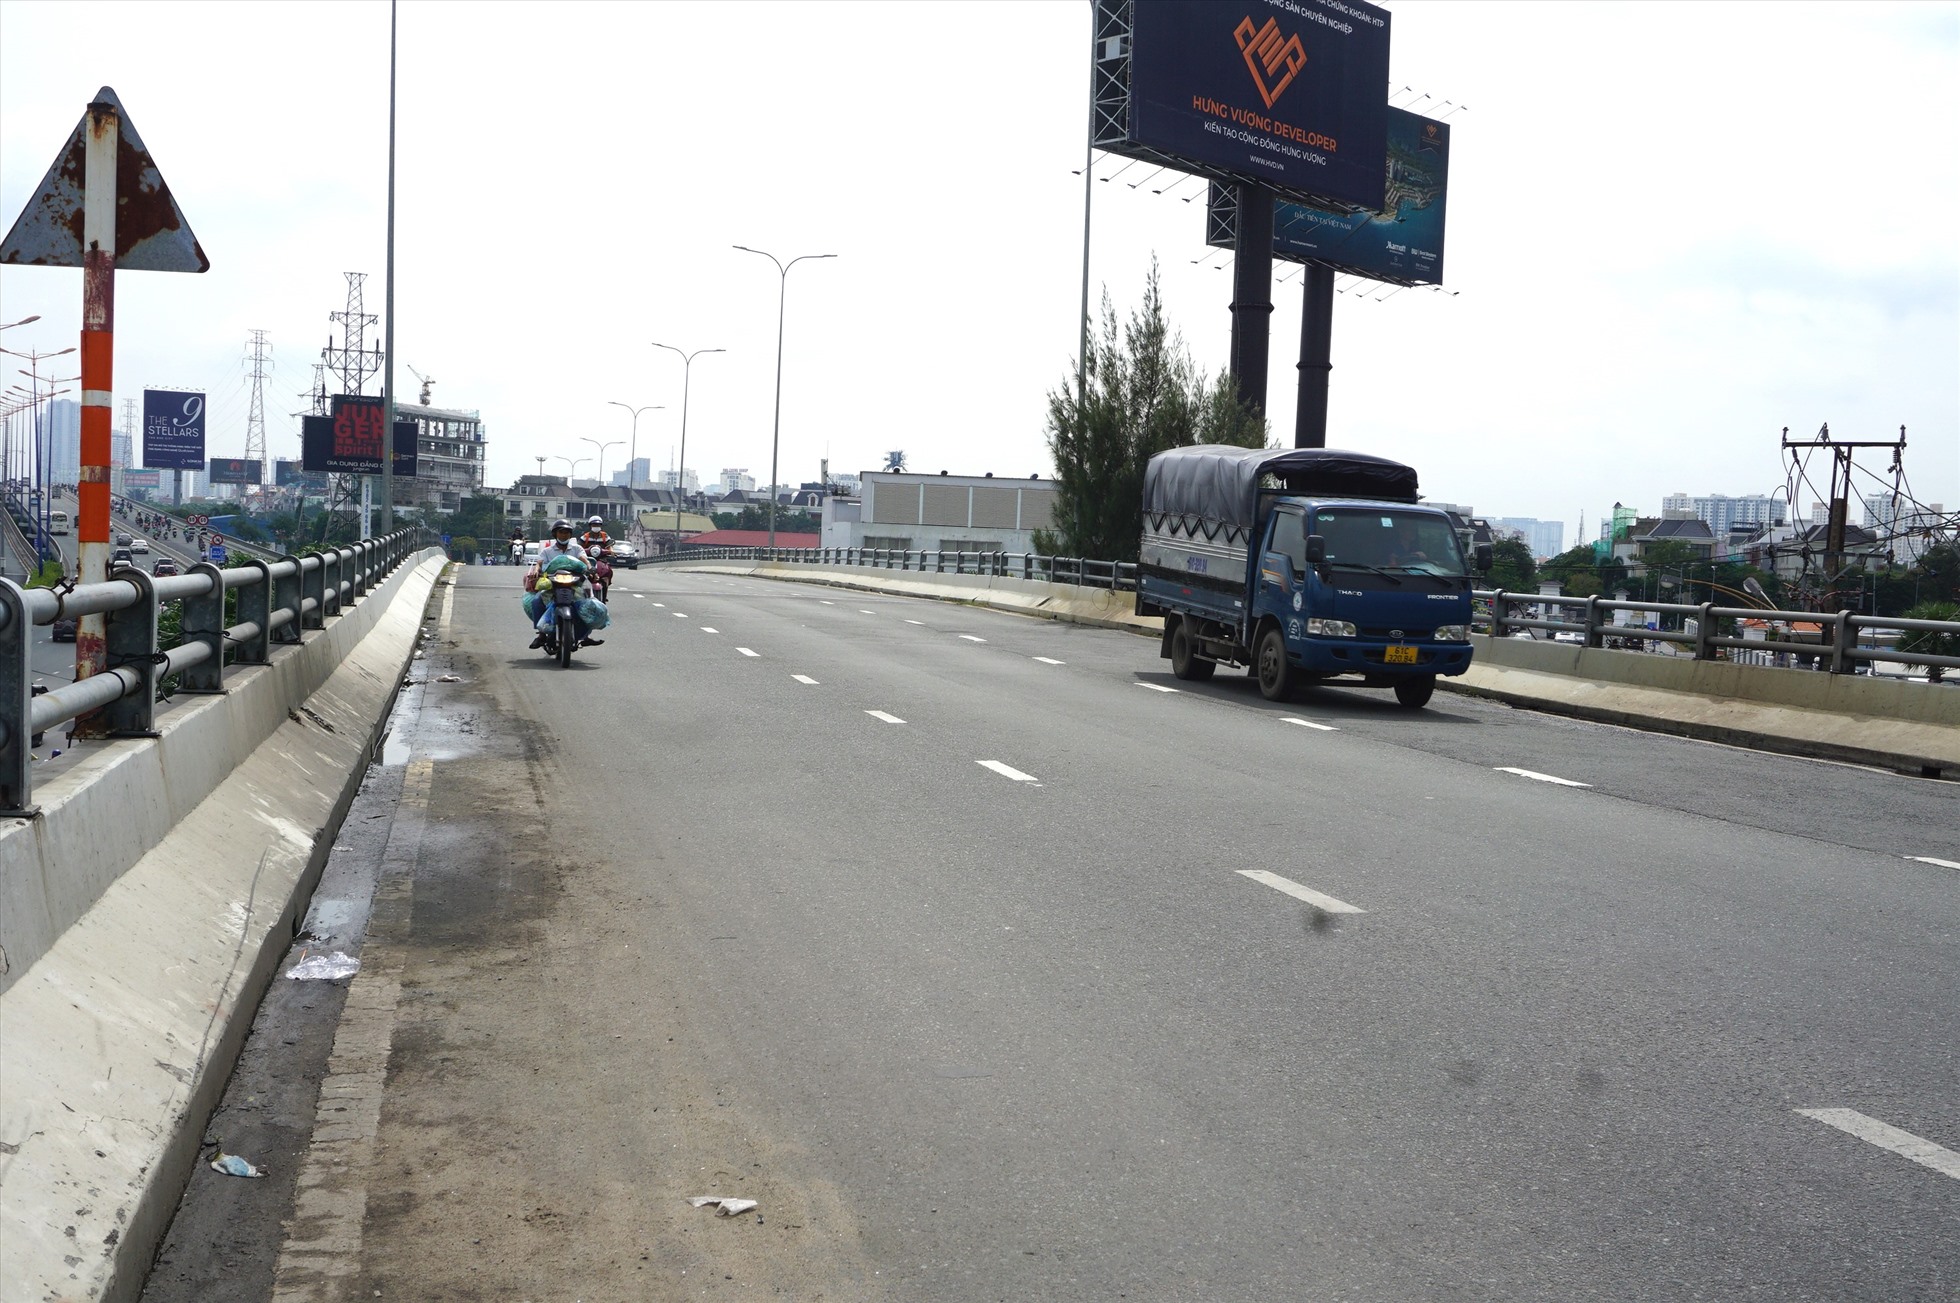 Để đảm bảo an toàn và khắc phục sự cố, Sở GTVT TPHCM tổ chức cấm xe tải và xe trên 16 chỗ đi qua cầu vượt Nguyễn Hữu Cảnh. Tuy nhiên, trong ngày 27.9, một số xe tải vẫn lưu thông qua cầu.